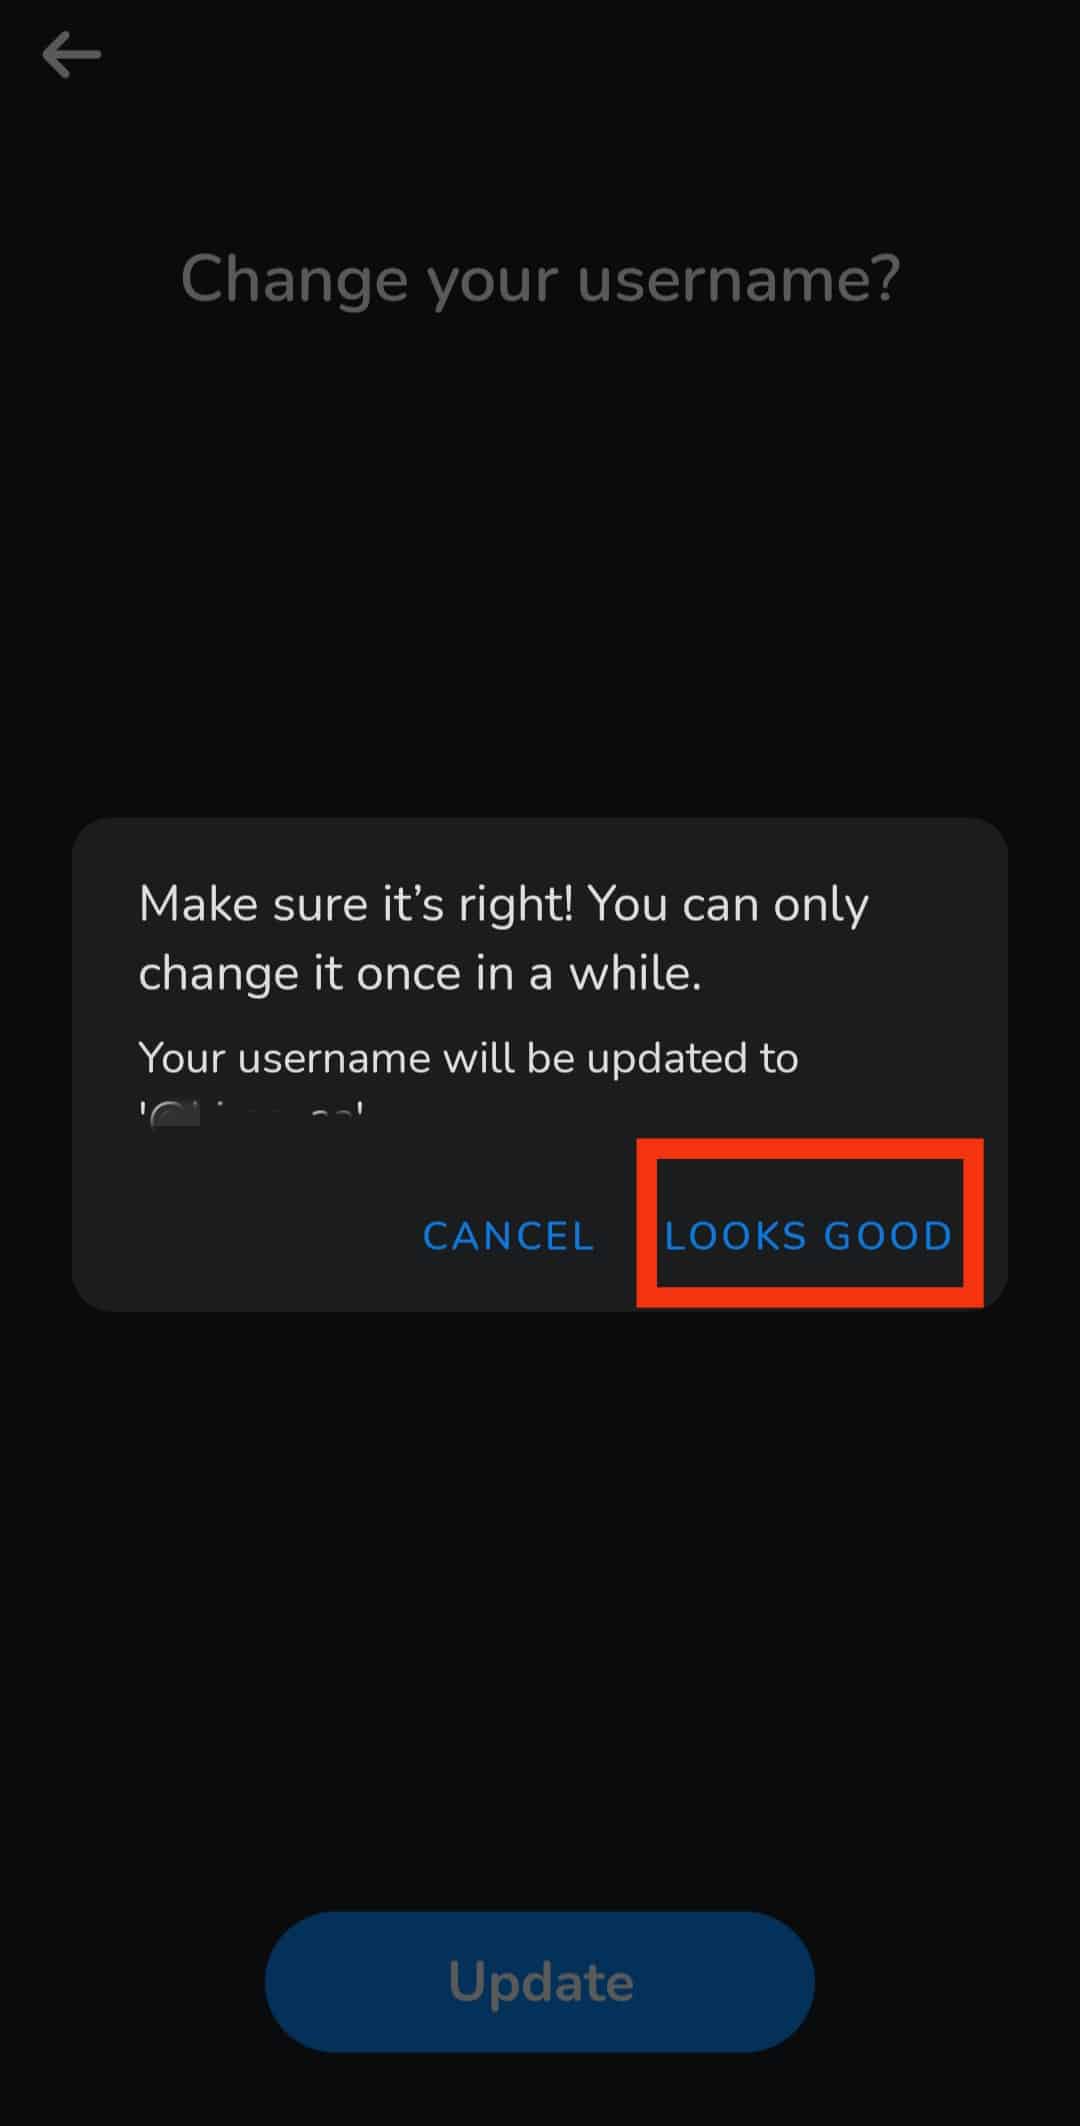 Trykk på Ser bra-knappen for å lagre det nye brukernavnet ditt etter at bekreftelsesboksen har dukket opp.